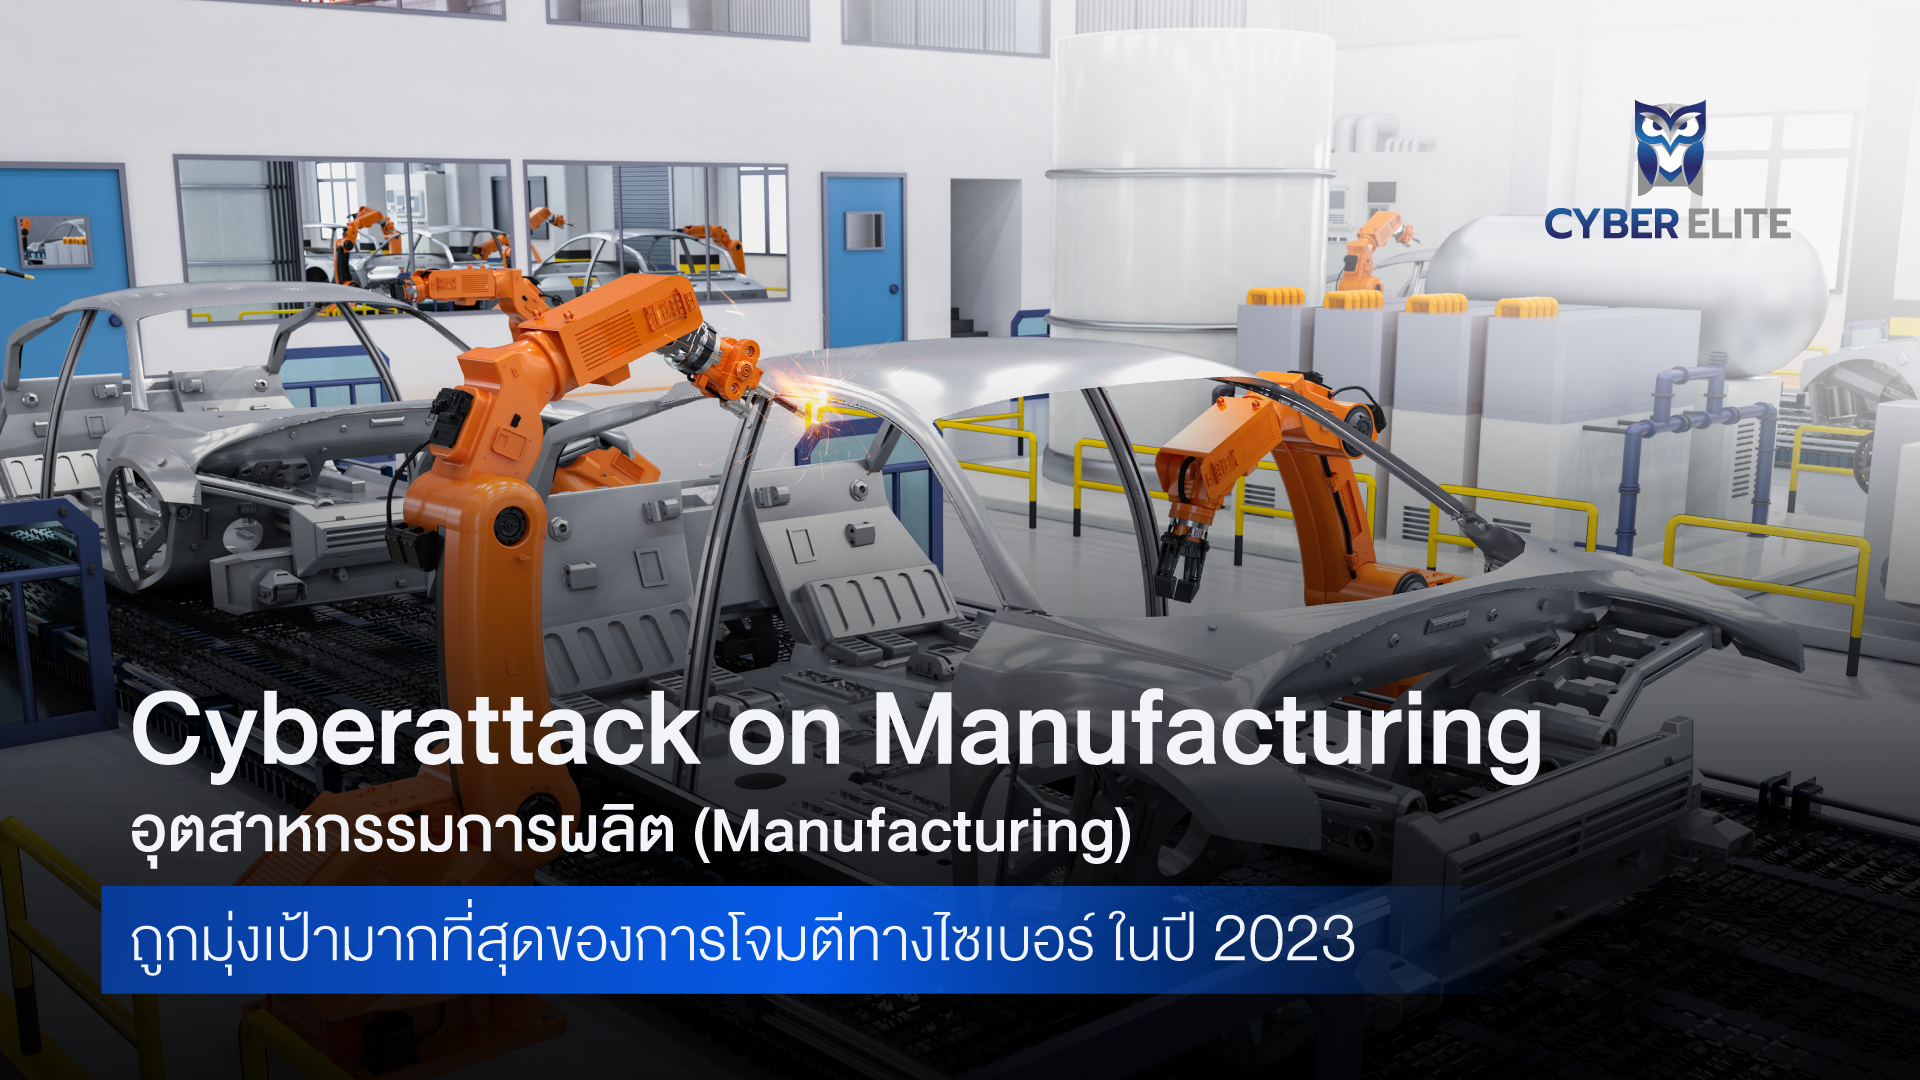 Cyberattack on Manufacturing: อุตสาหกรรมการผลิต (Manufacturing) ถูกมุ่งเป้ามากที่สุดของการโจมตีทางไซเบอร์ ในปี 2023